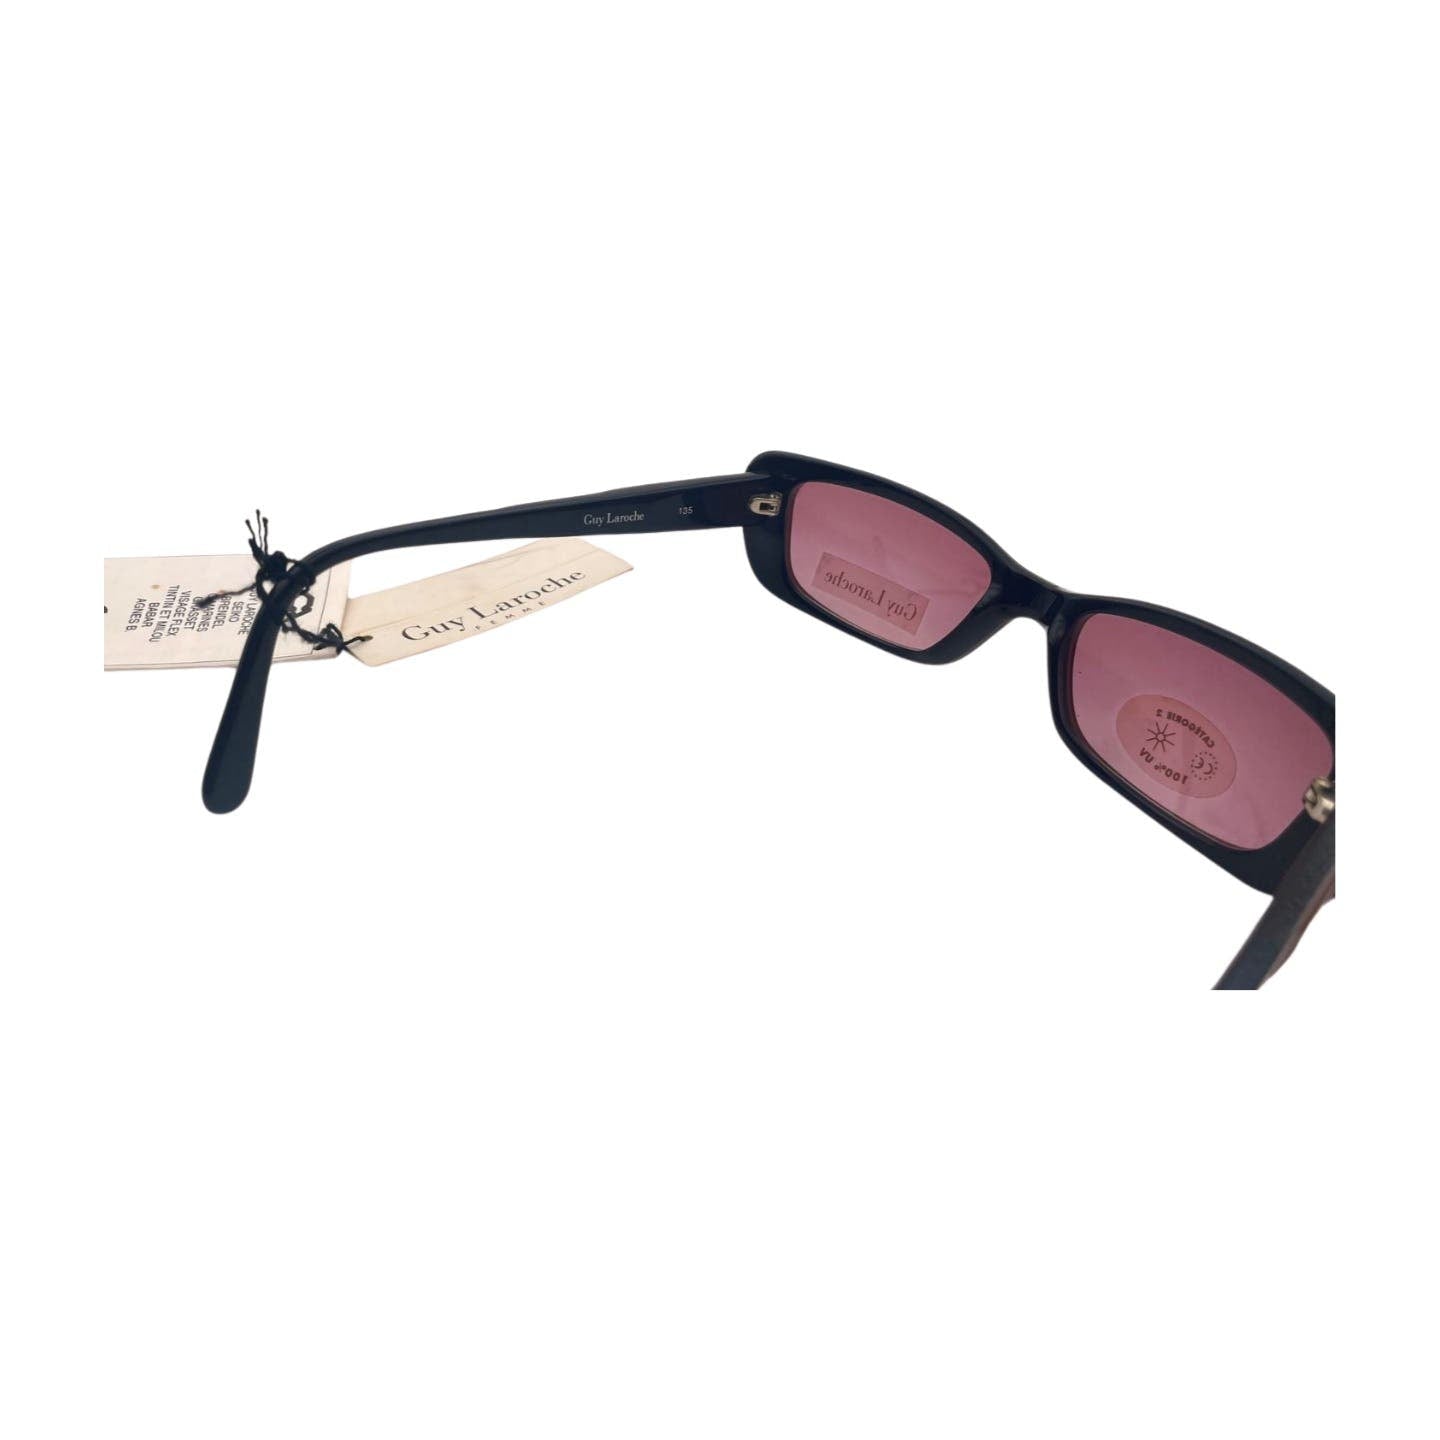 Vintage Deadstock Guy Laroche Sunglasses - Le Look